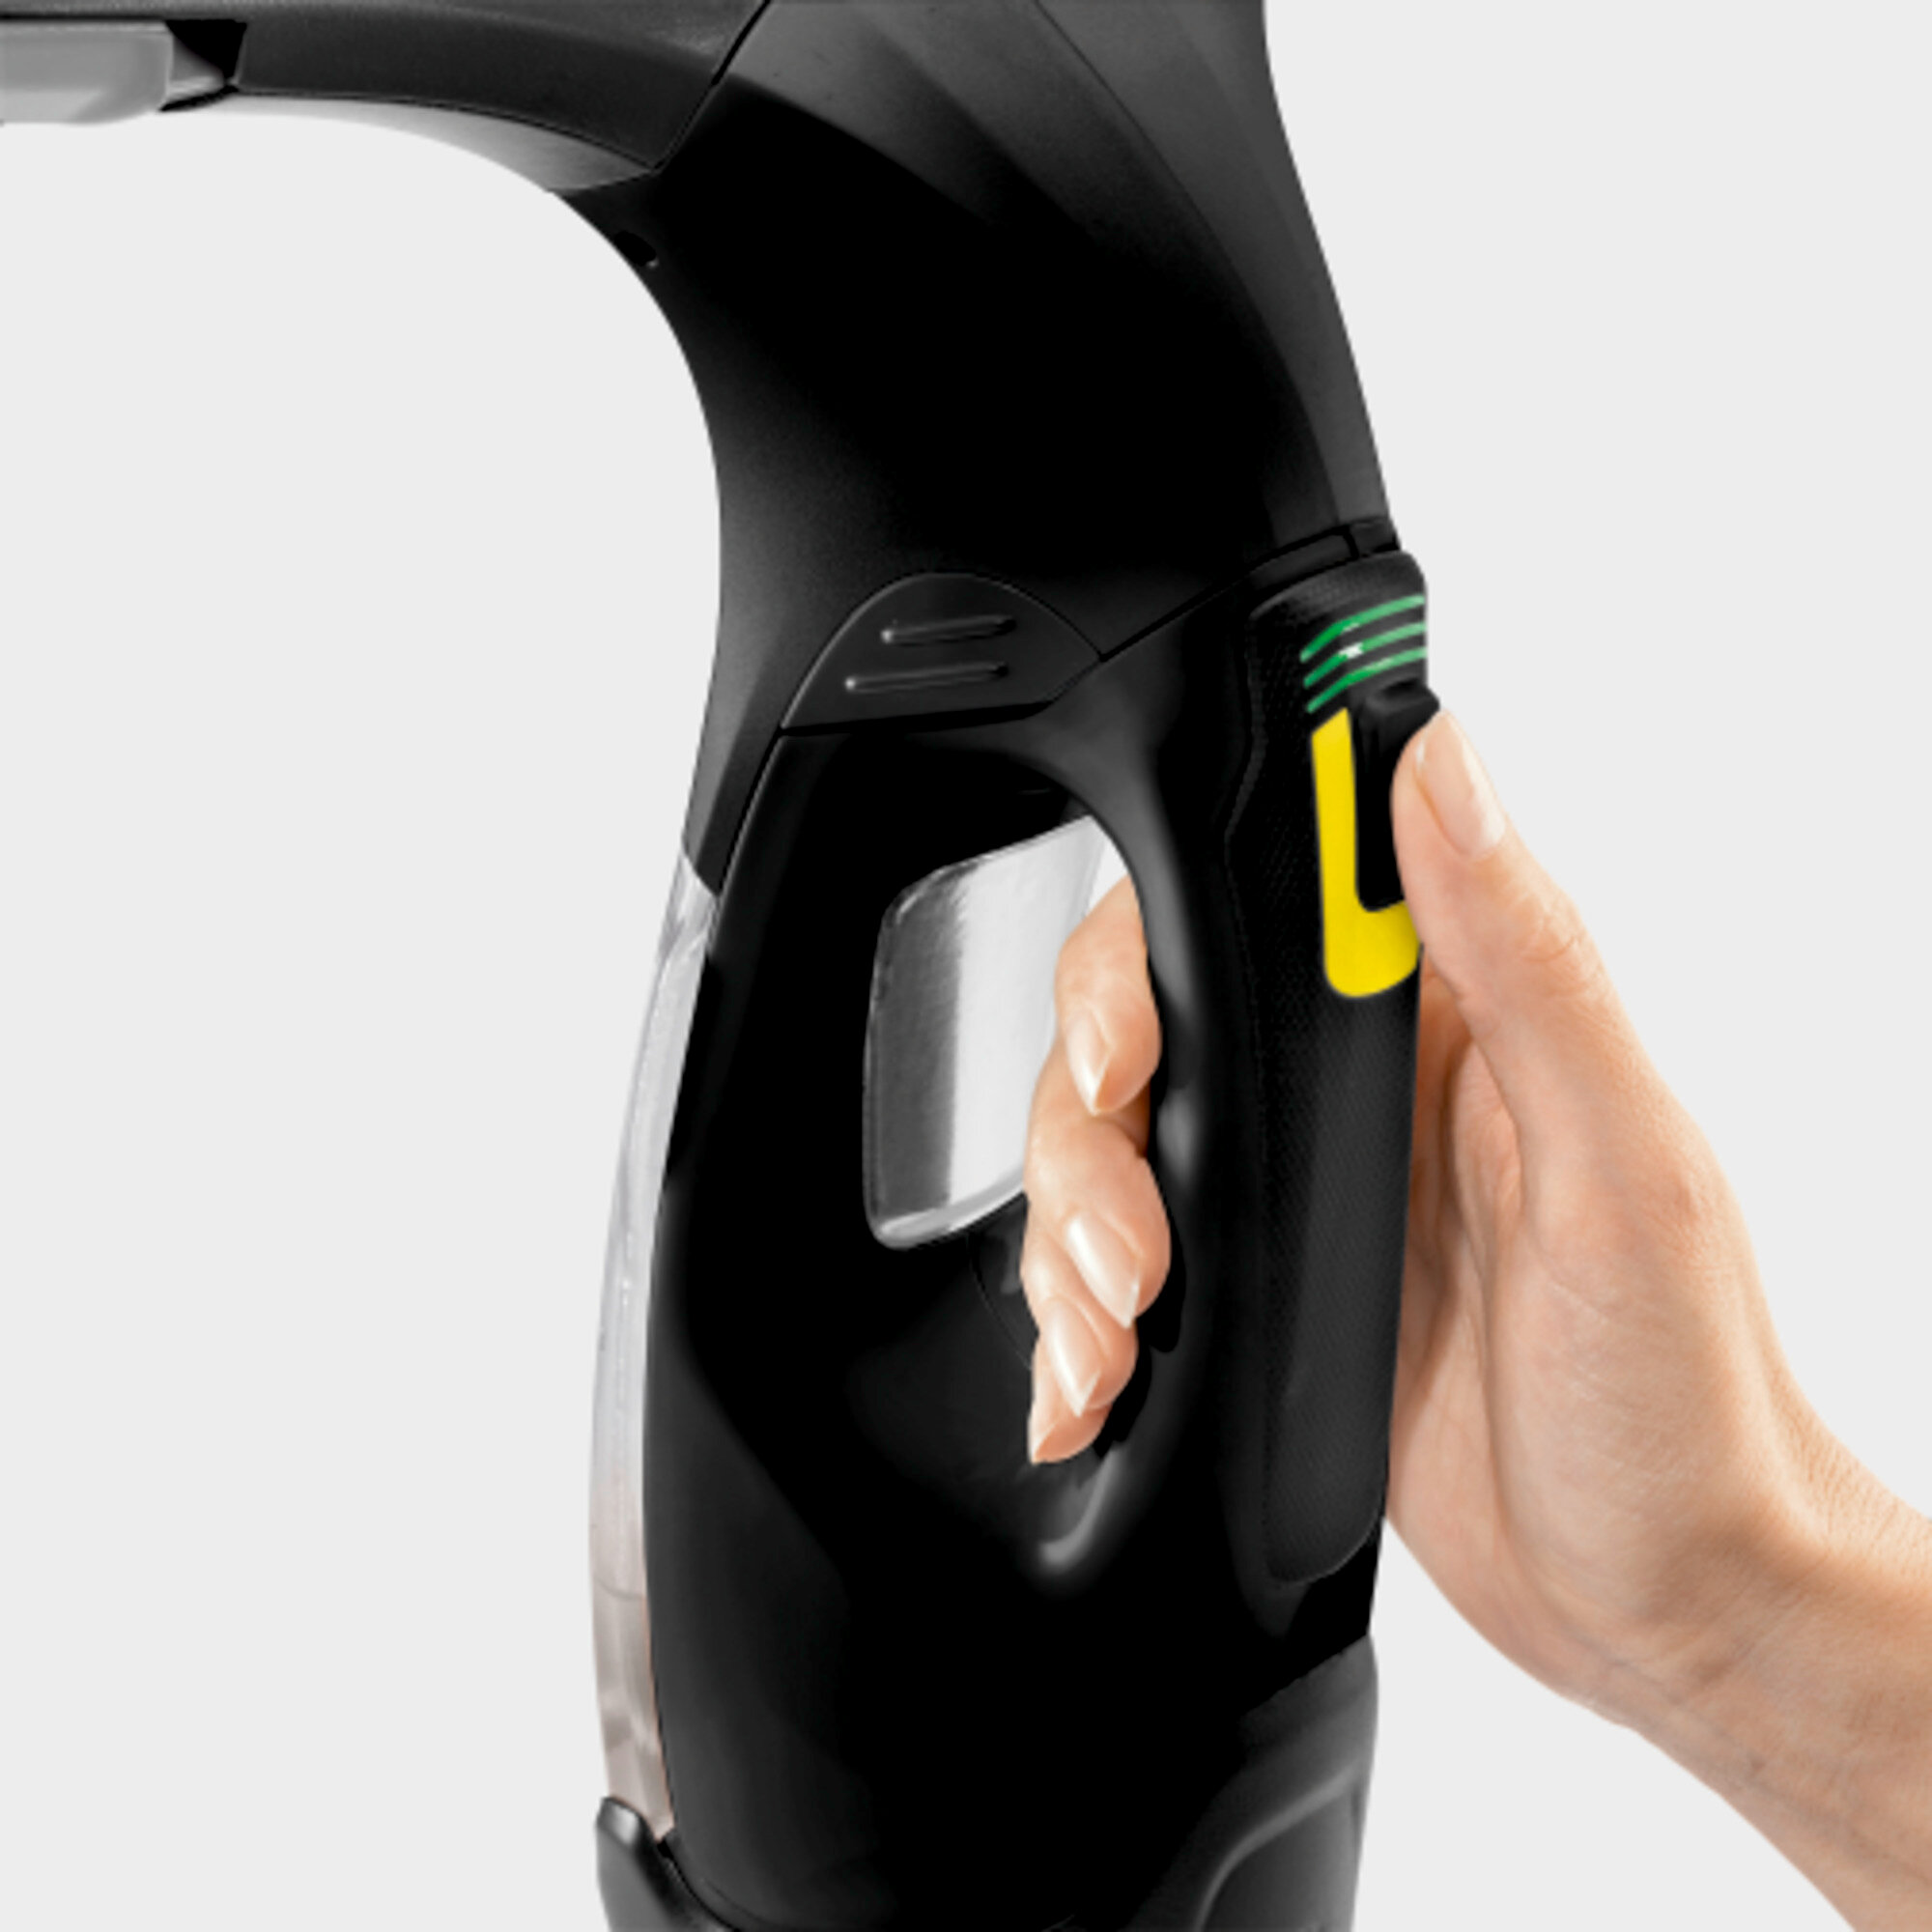 Şarjlı Cam Temizleme WV 5 Plus N Black Edıtıon Şarjlı Cam Temizleme Makinesi: Pil seviyesi göstergesi ve rahat tutuş